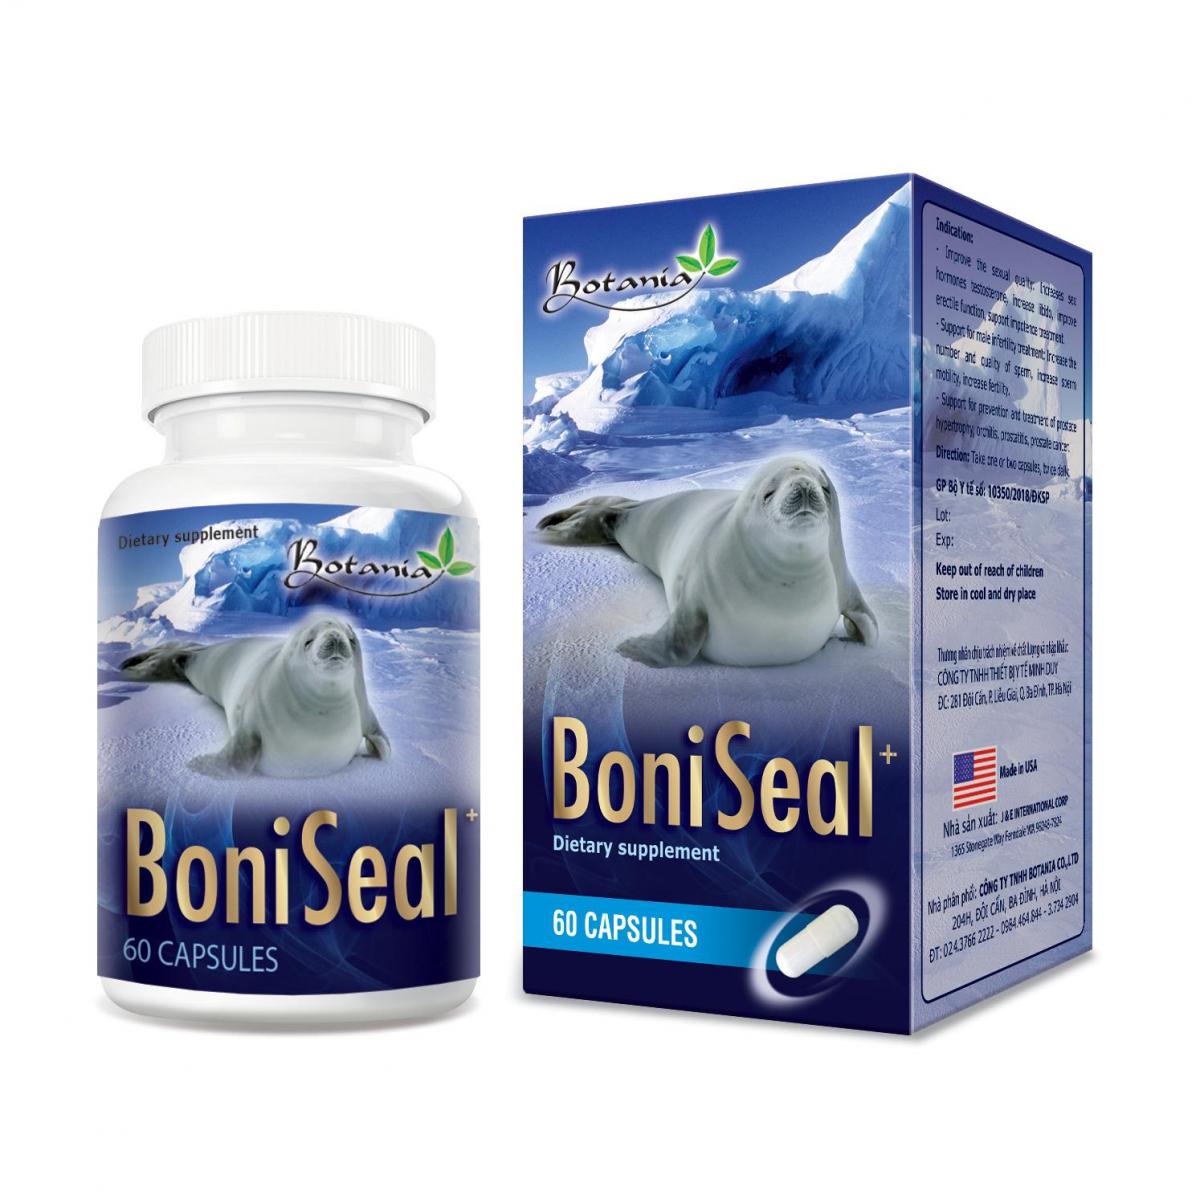 BoniSeal + - Bí quyết giúp kiểm soát rối loạn cương dương an toàn và hiệu quả